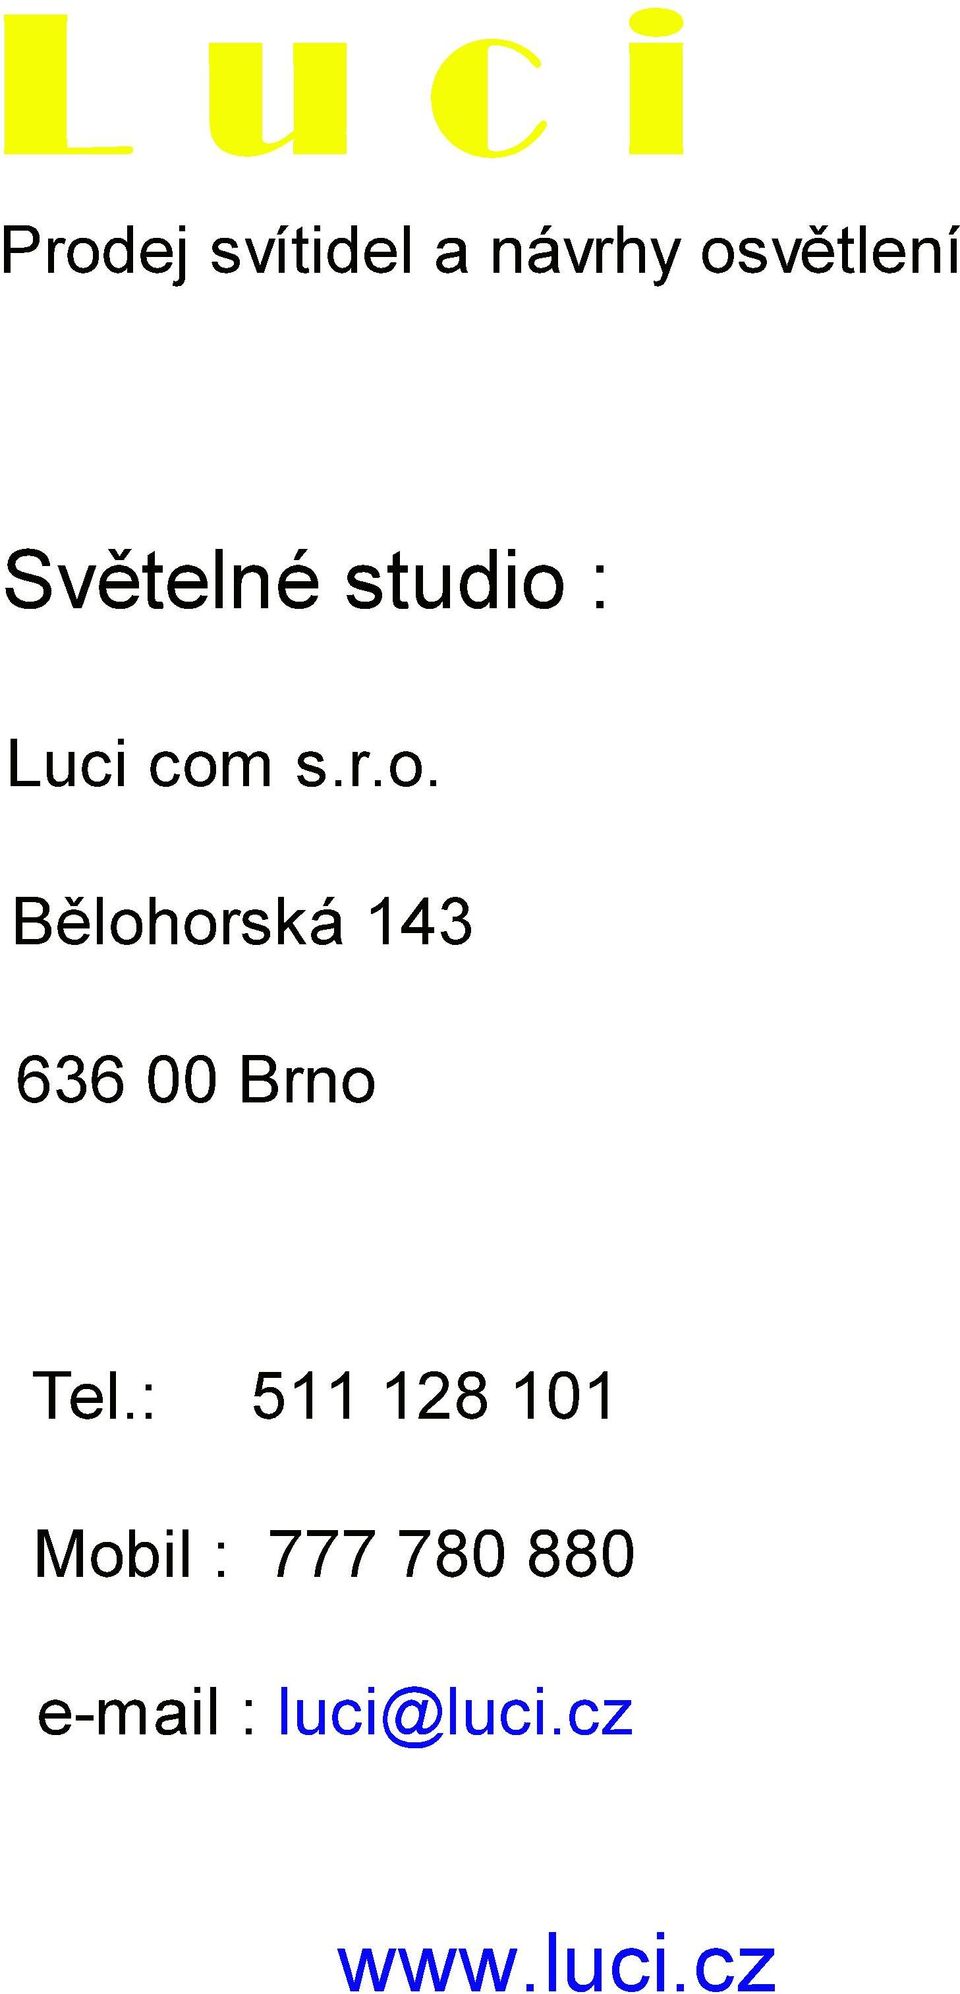 Lucicom s.r.o. Běloorská143 63600Brno Tel.